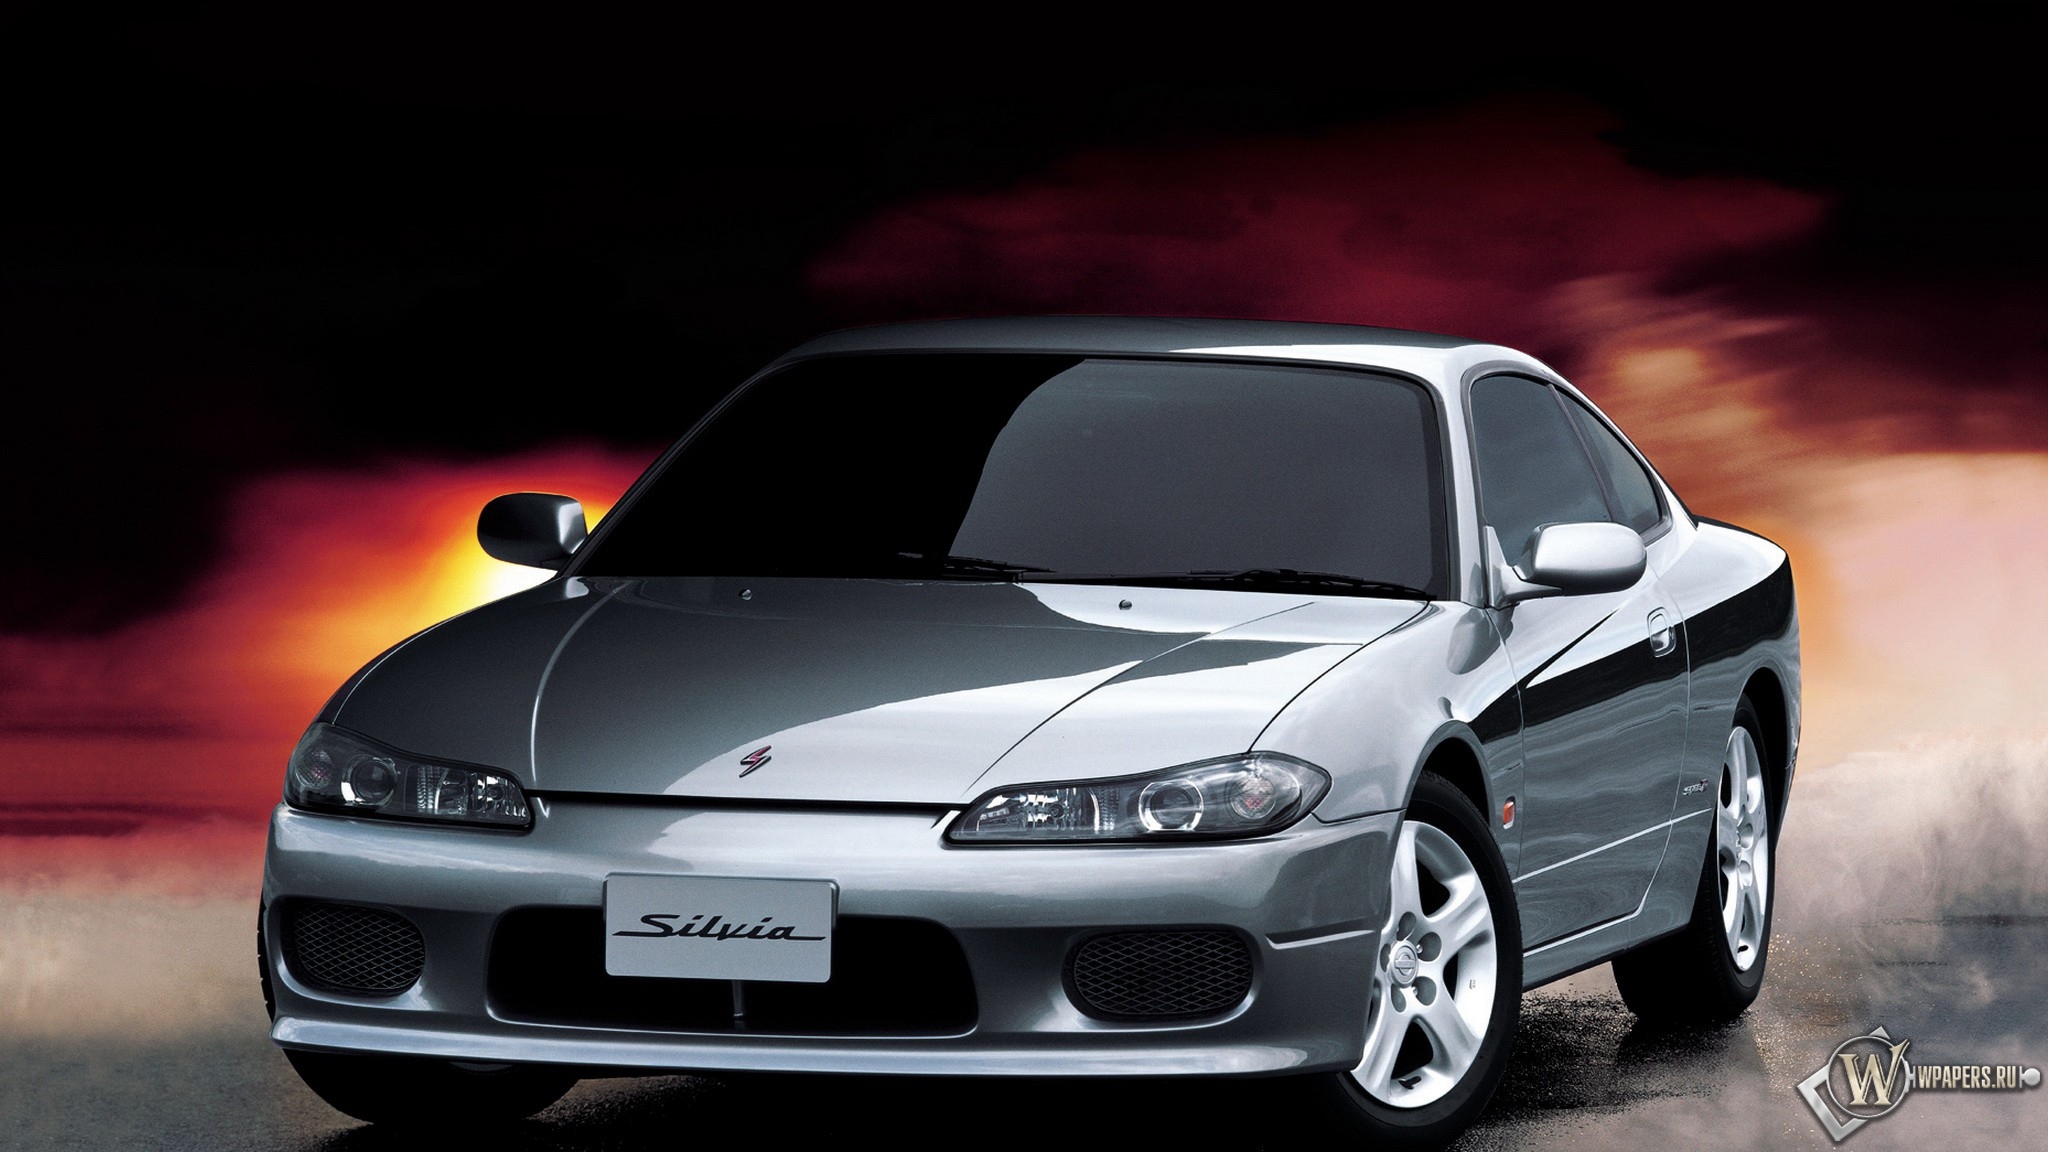 Nissan Silvia spec r 2048x1152